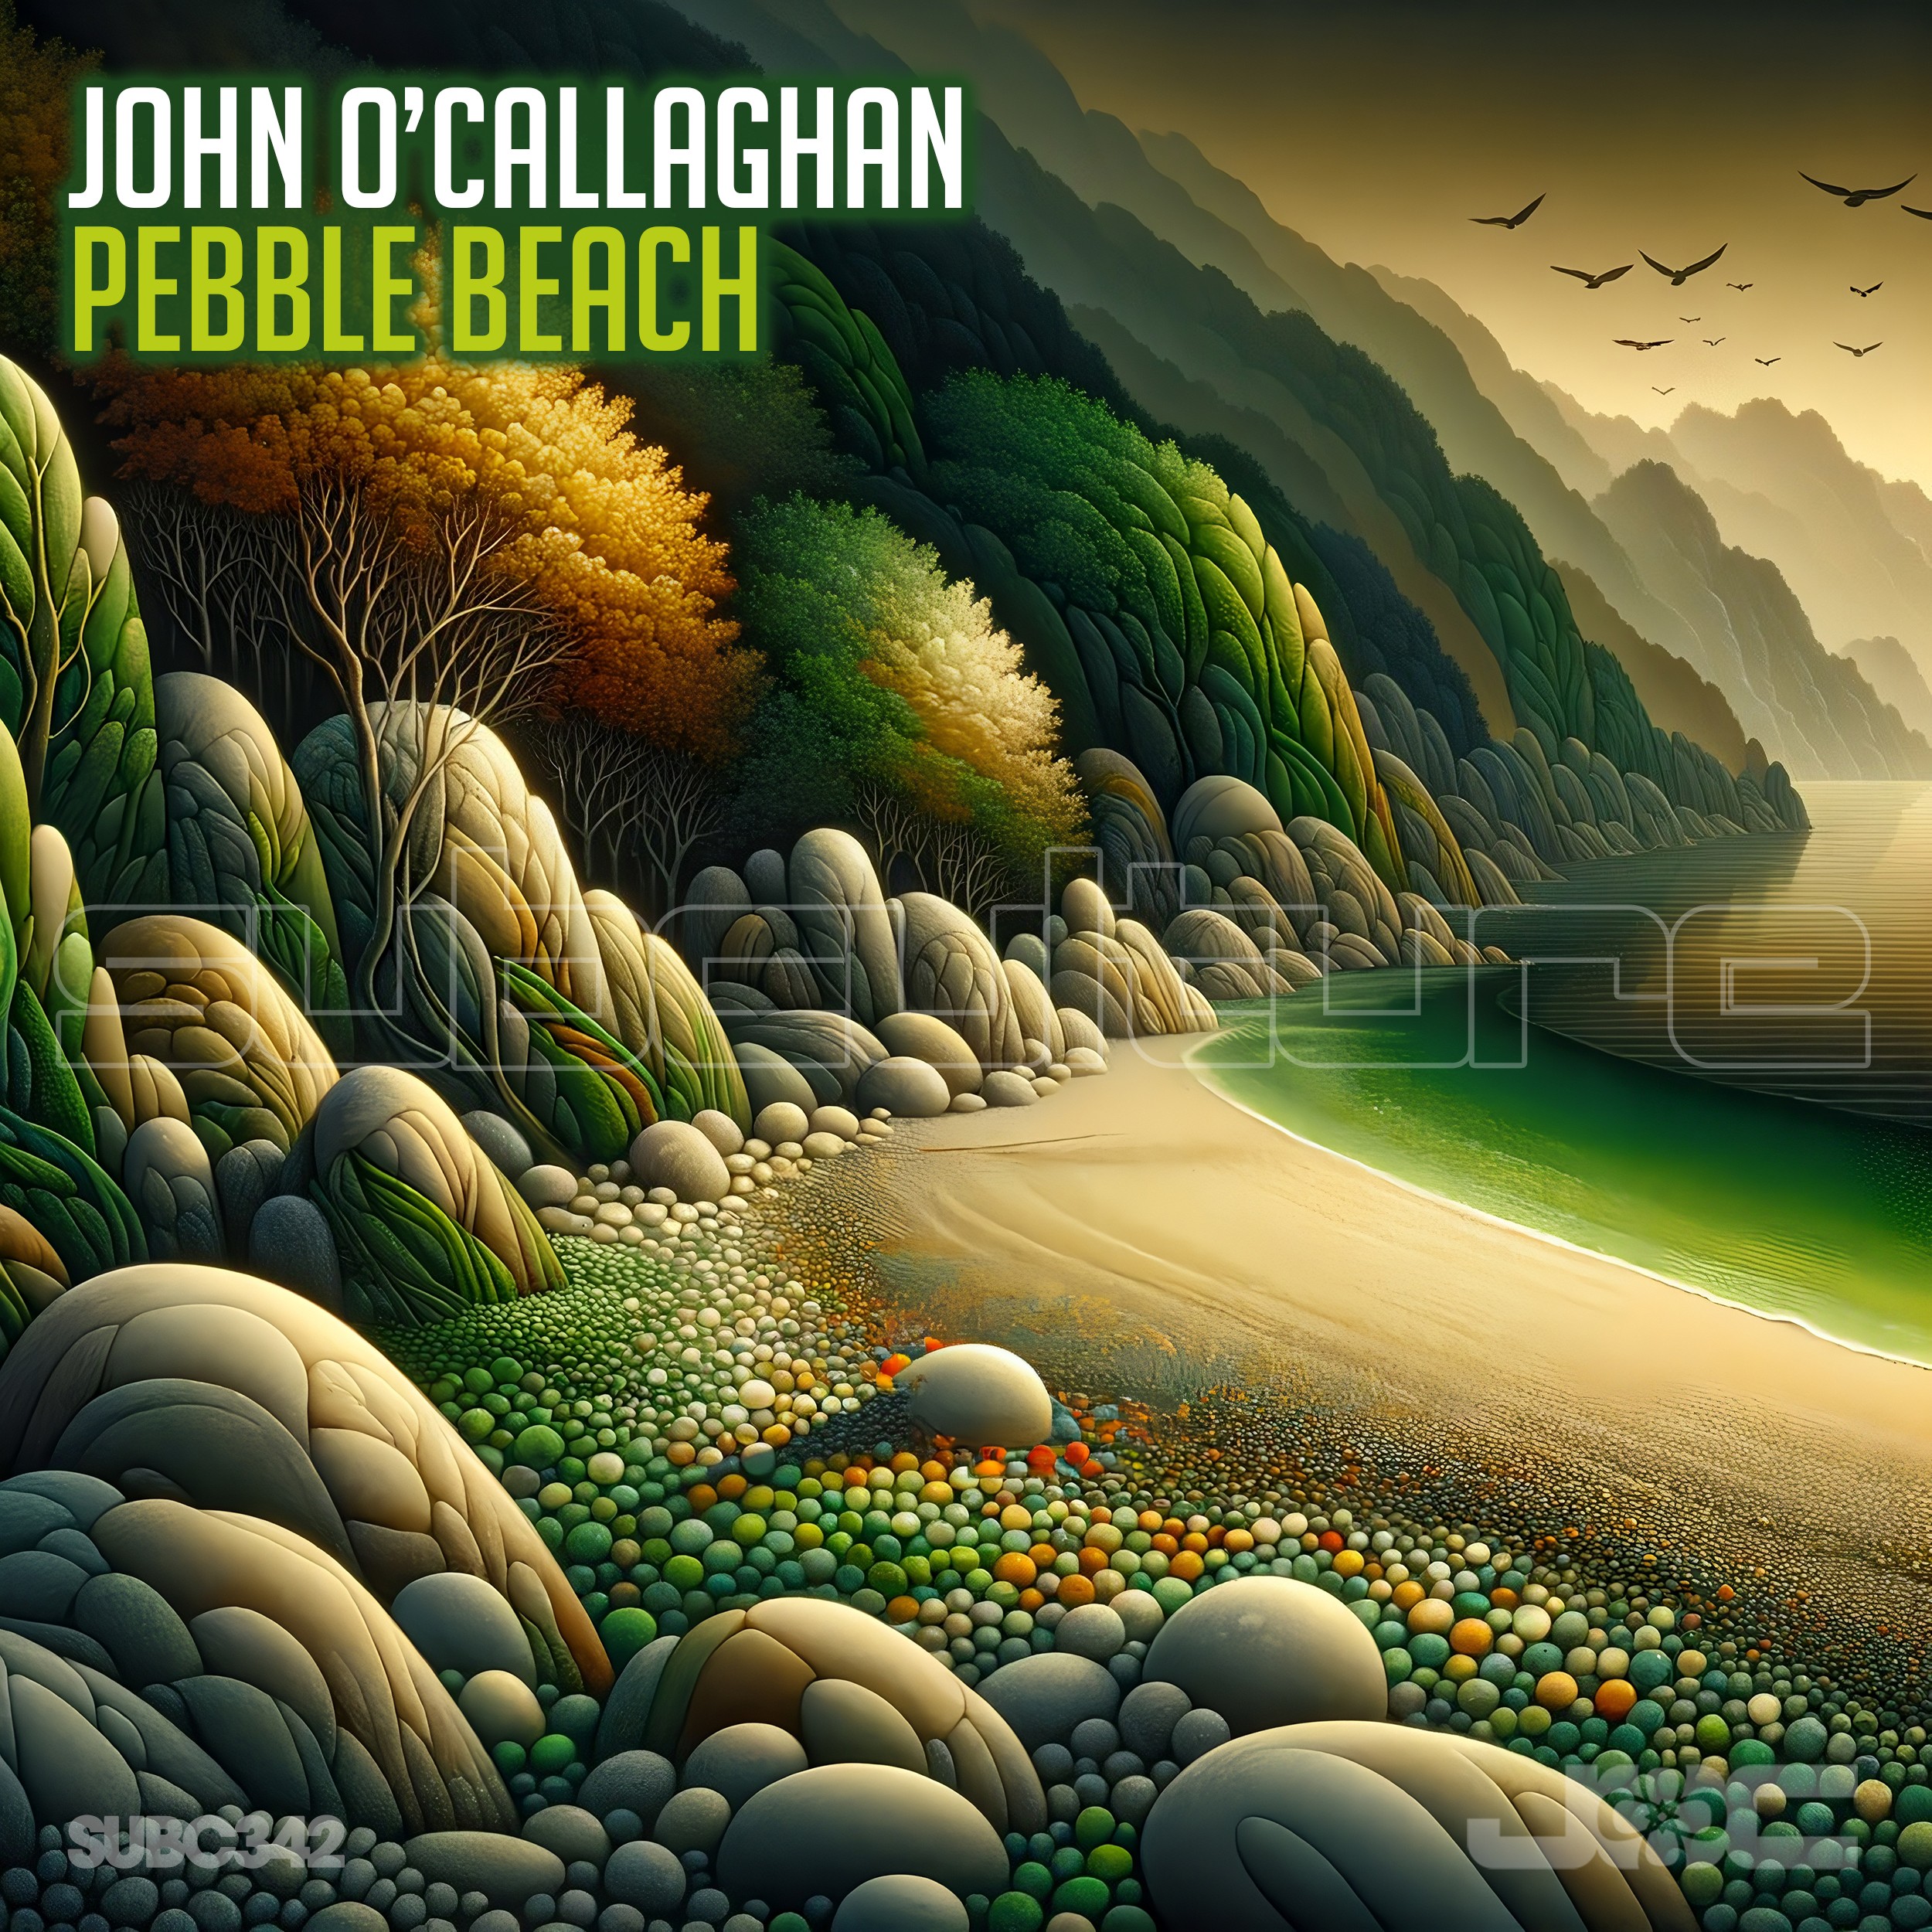 John O'Callaghan presents Pebble Beach on black Hole Recordings